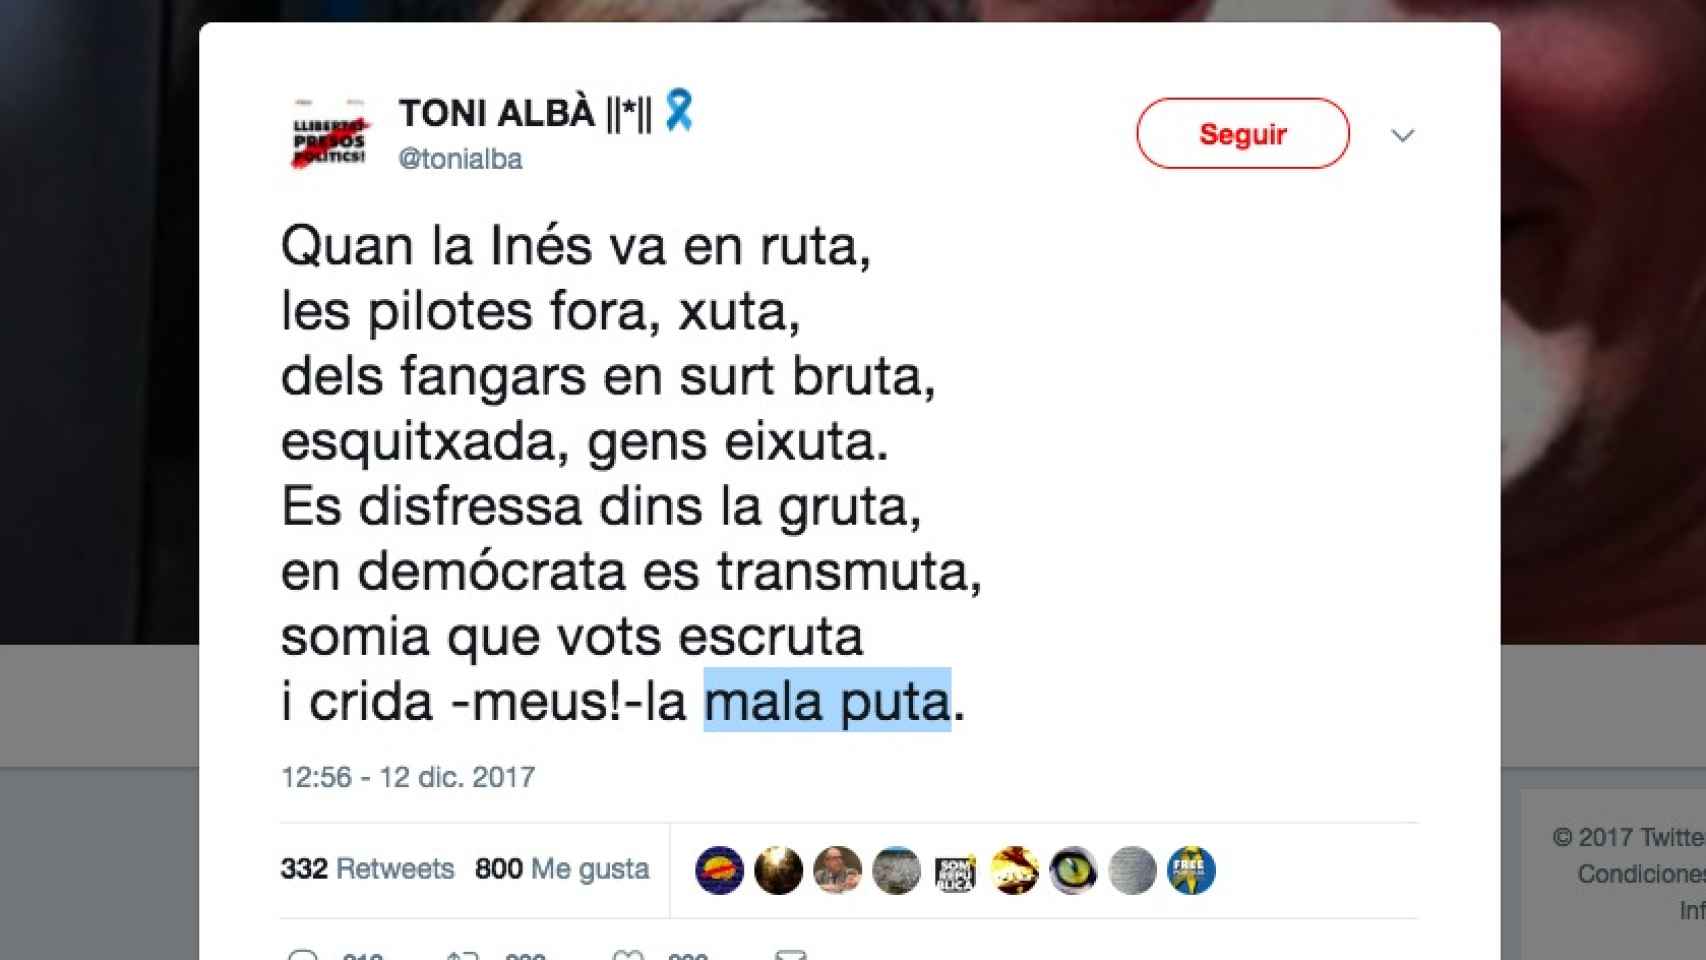 Captura del tuit del actor Toni Albà.